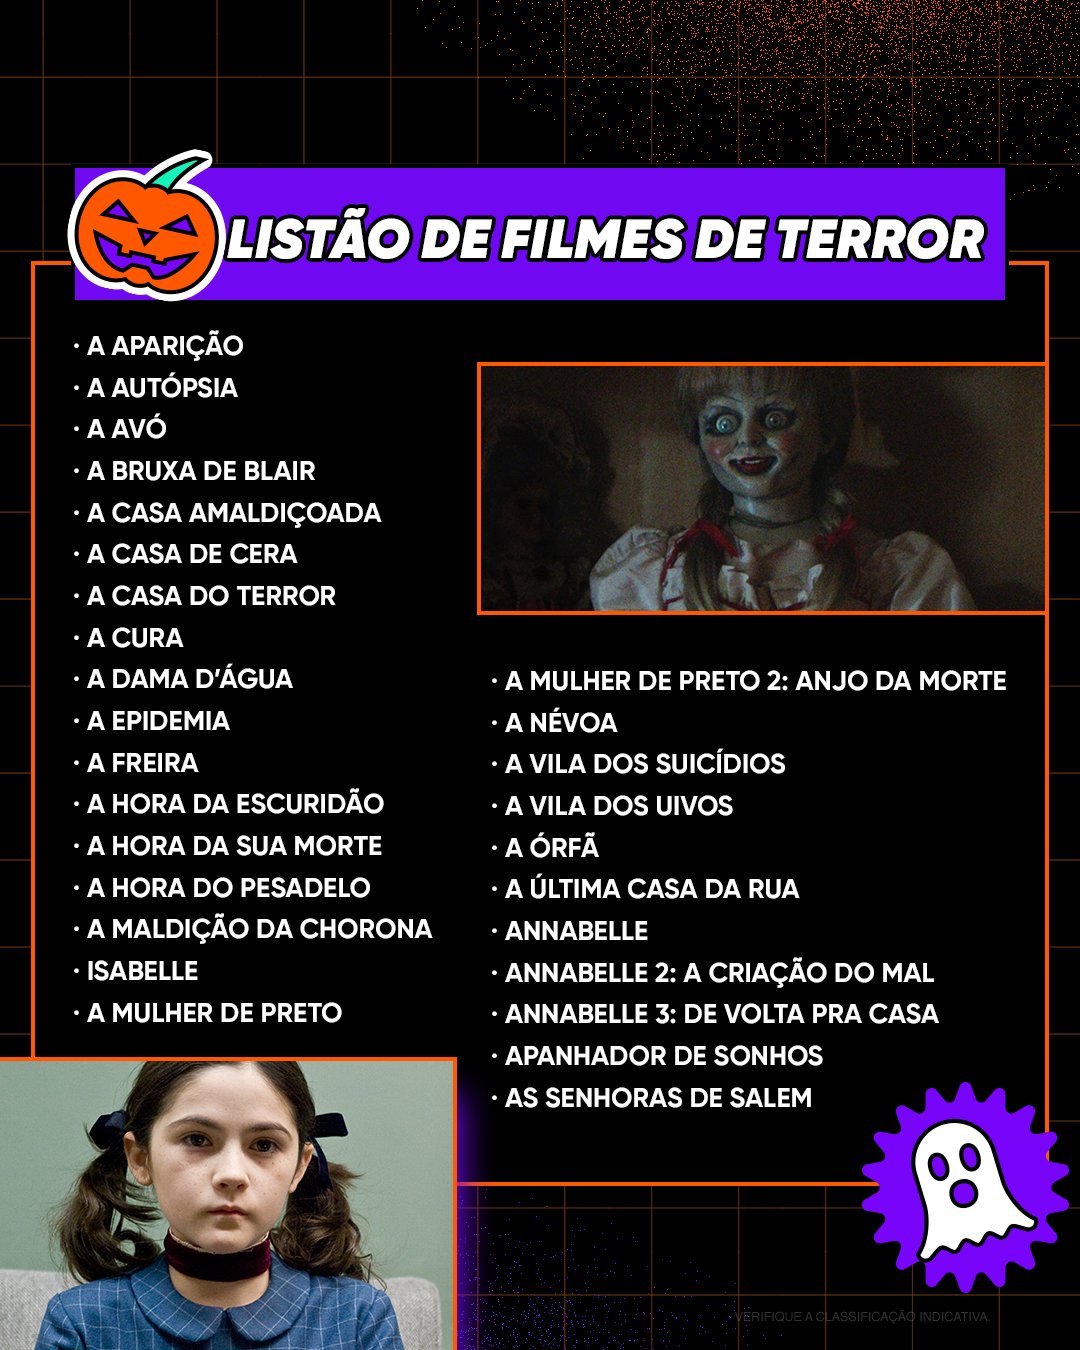 HBO Max Brasil on X: Faltam seis meses pro Halloween! 🎃 Tempo